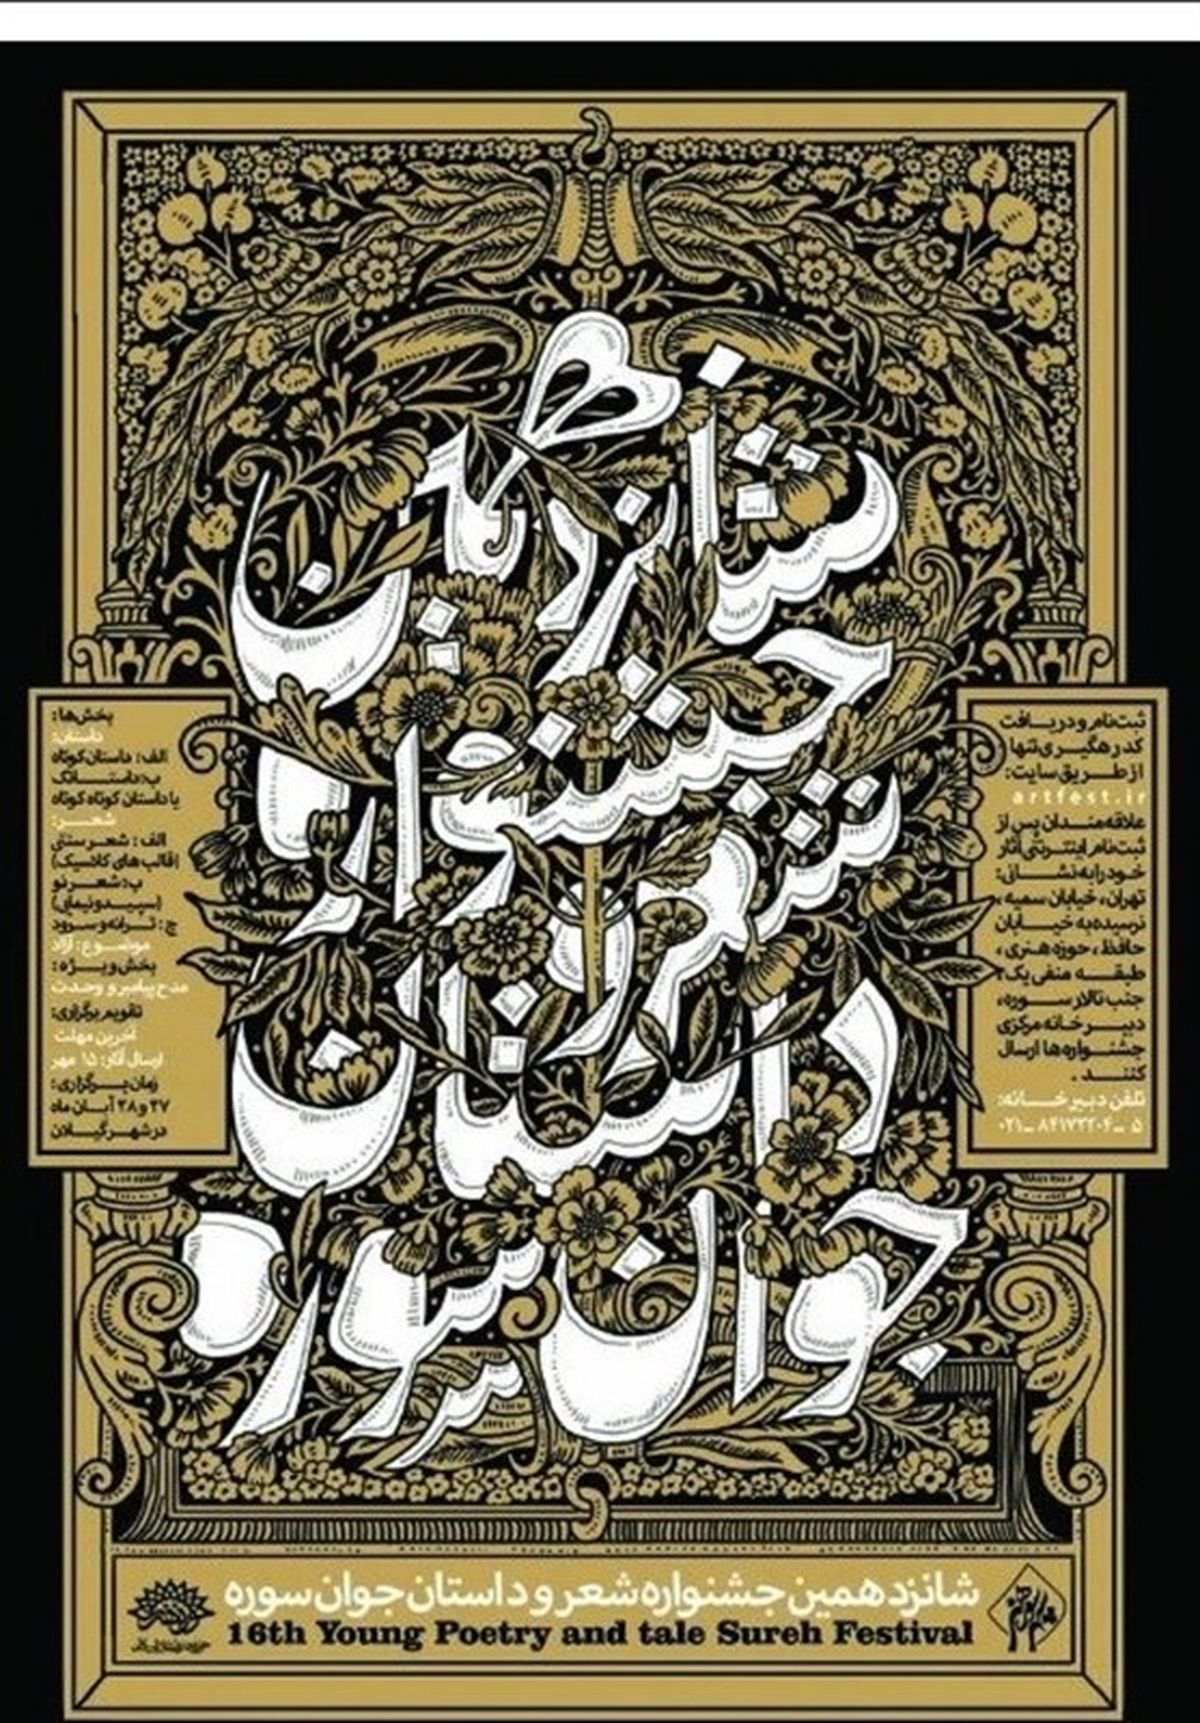 ۱۵ مهرماه؛ آخرین فرصت شرکت در شانزدهمین جشنواره شعر و داستان جوان «سوره»